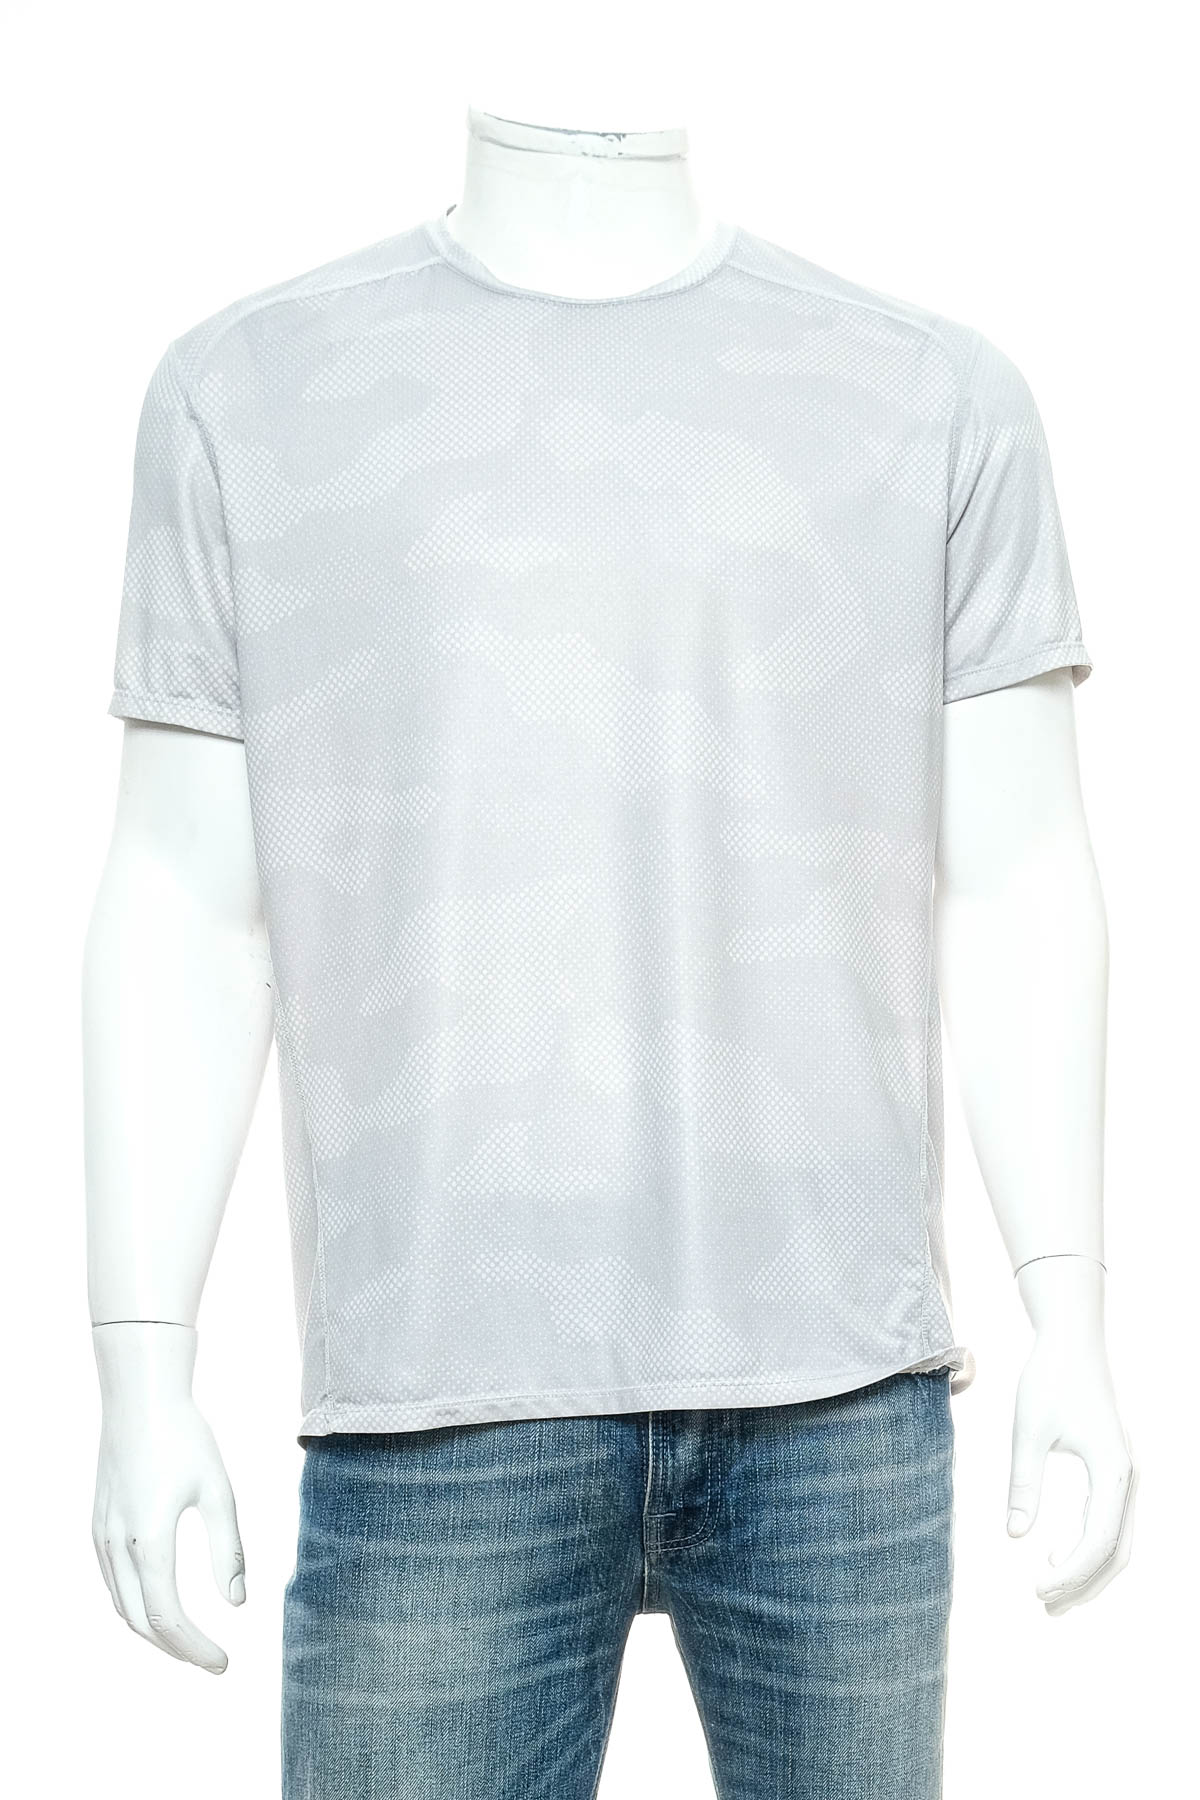 Αντρική μπλούζα - H&M - 0